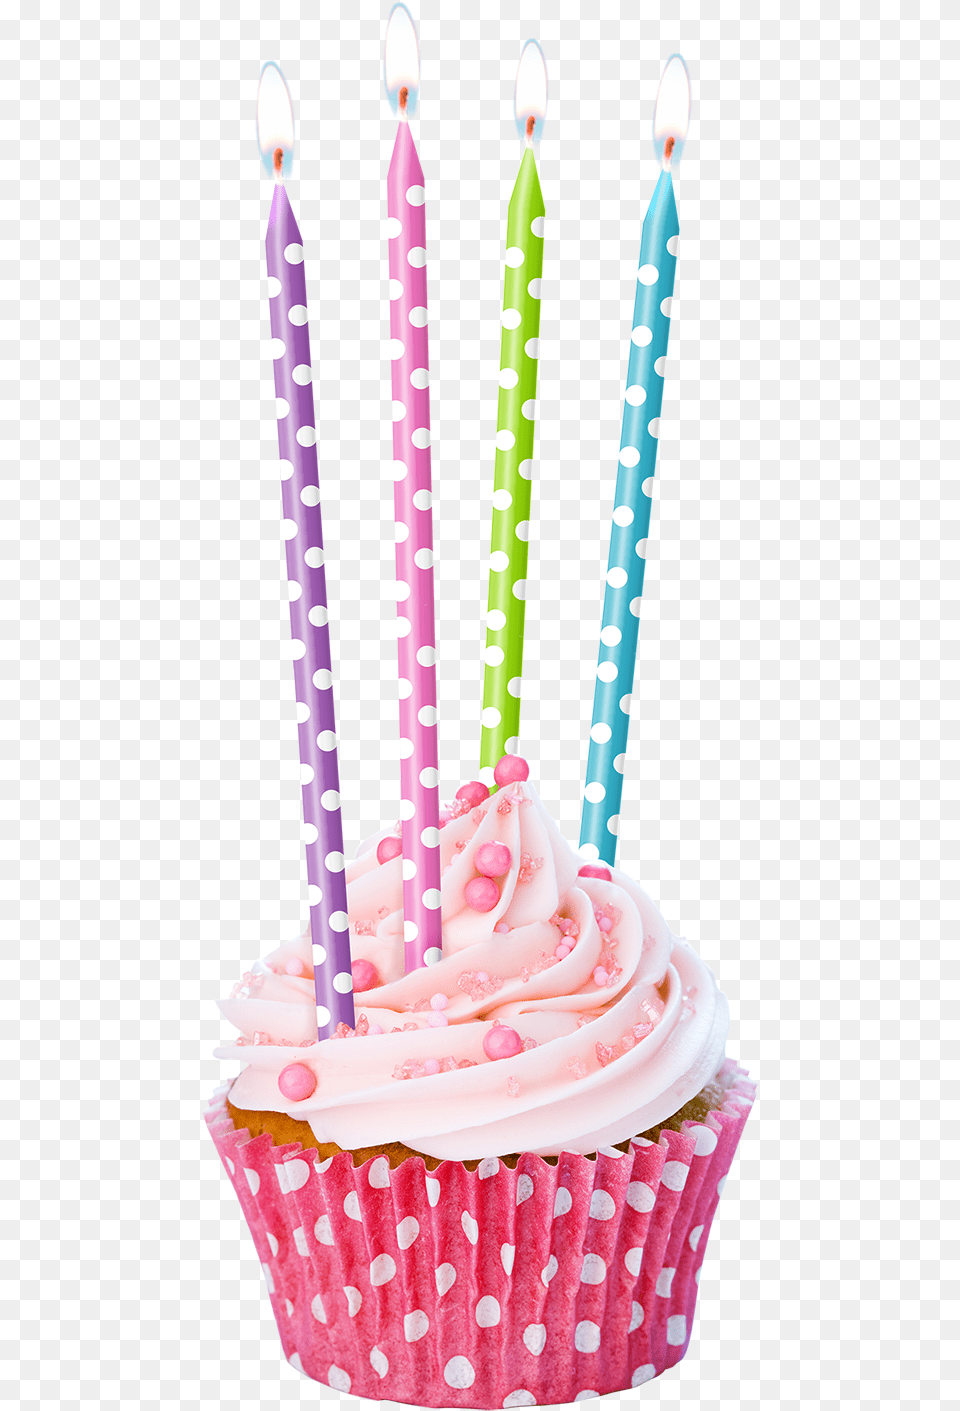 Vela Larga Puntos Tortas De Cupcake With Candle, Birthday Cake, Cake, Cream, Dessert Free Png